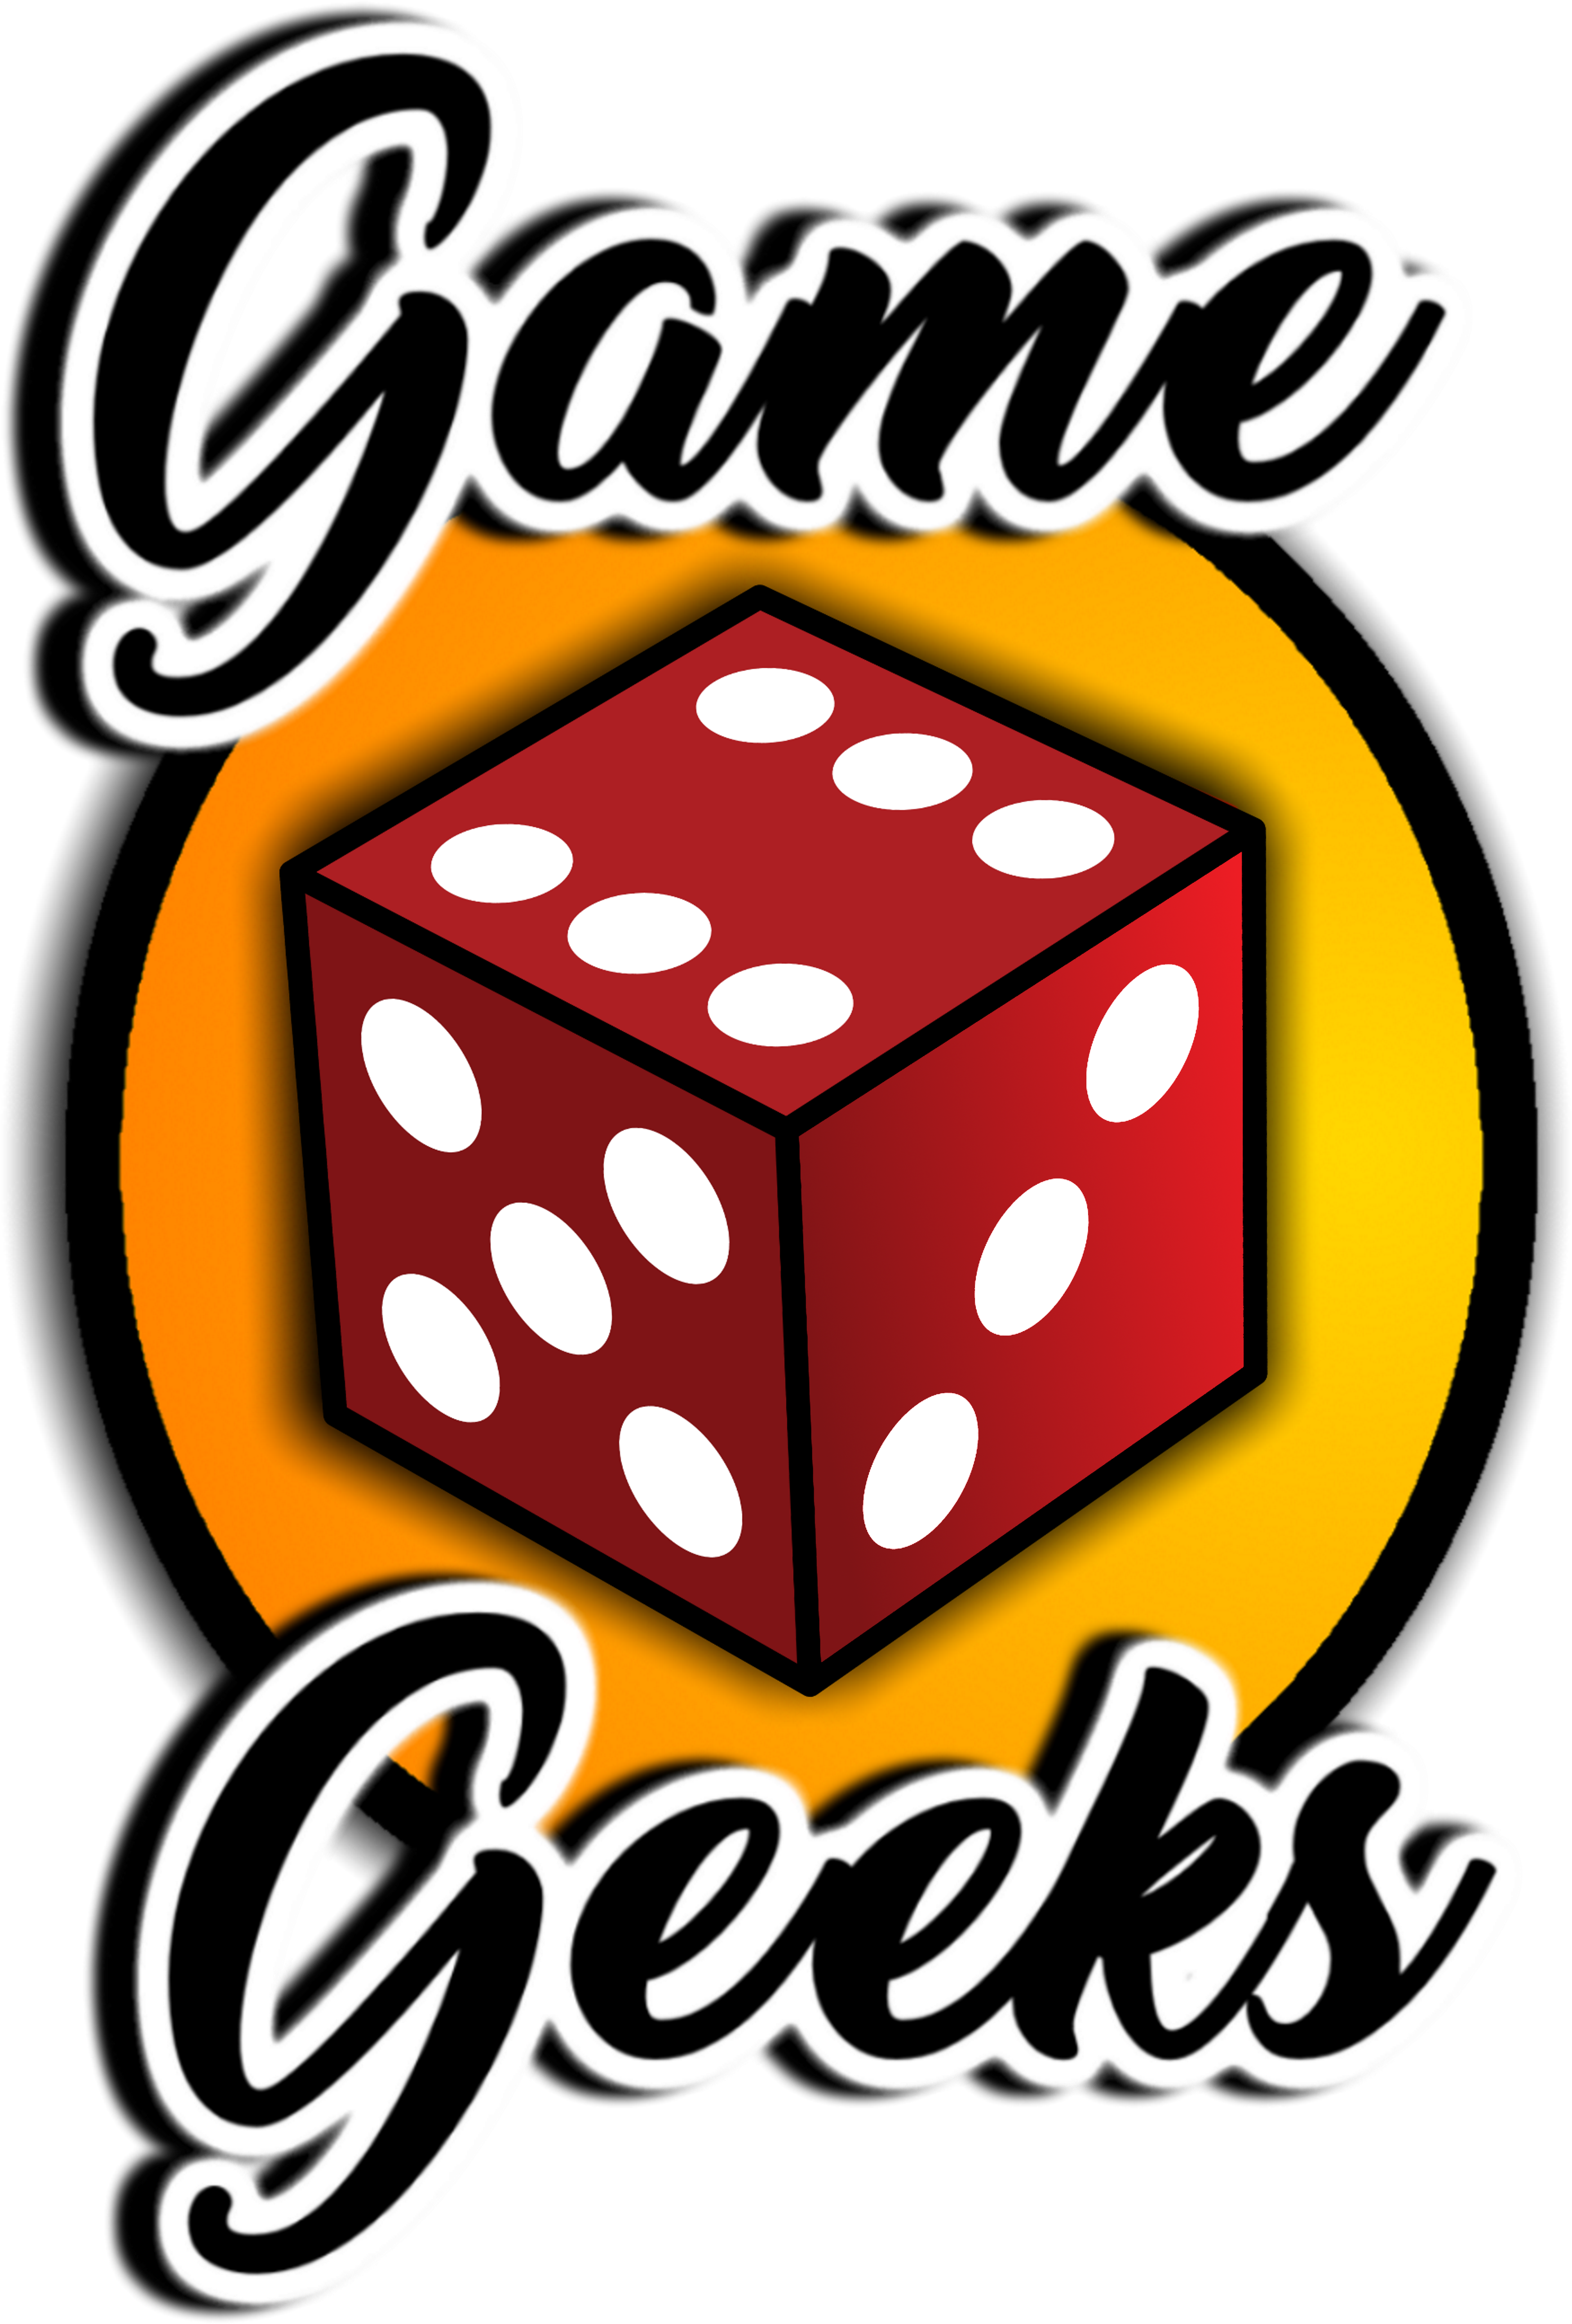 Game Geeks - Geeks On Site (4898x5922)